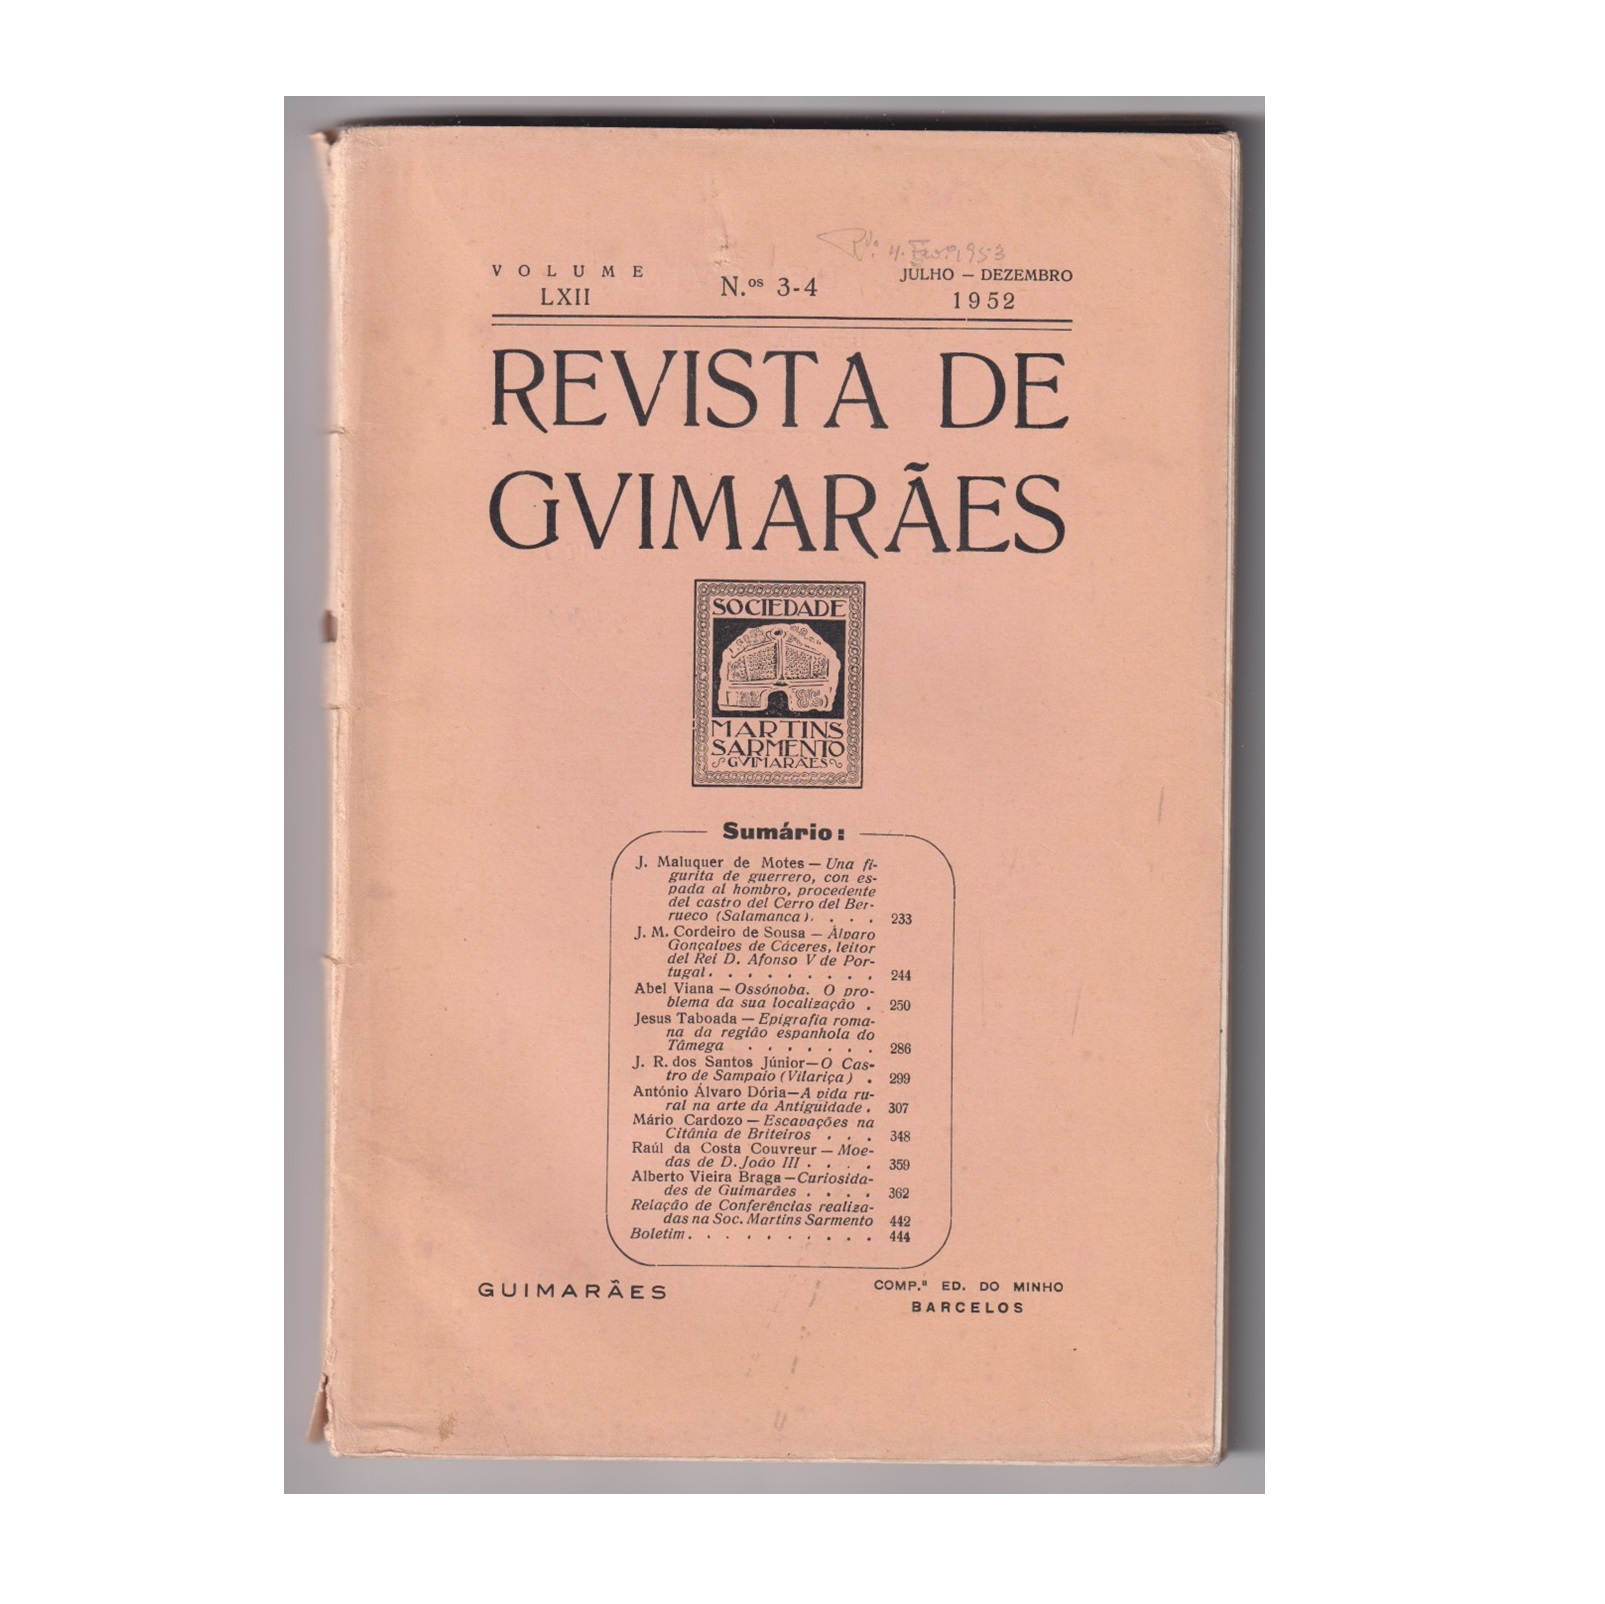 REVISTA DE GUIMARÃES. VOL. LXII. N.º 3-4, 1952